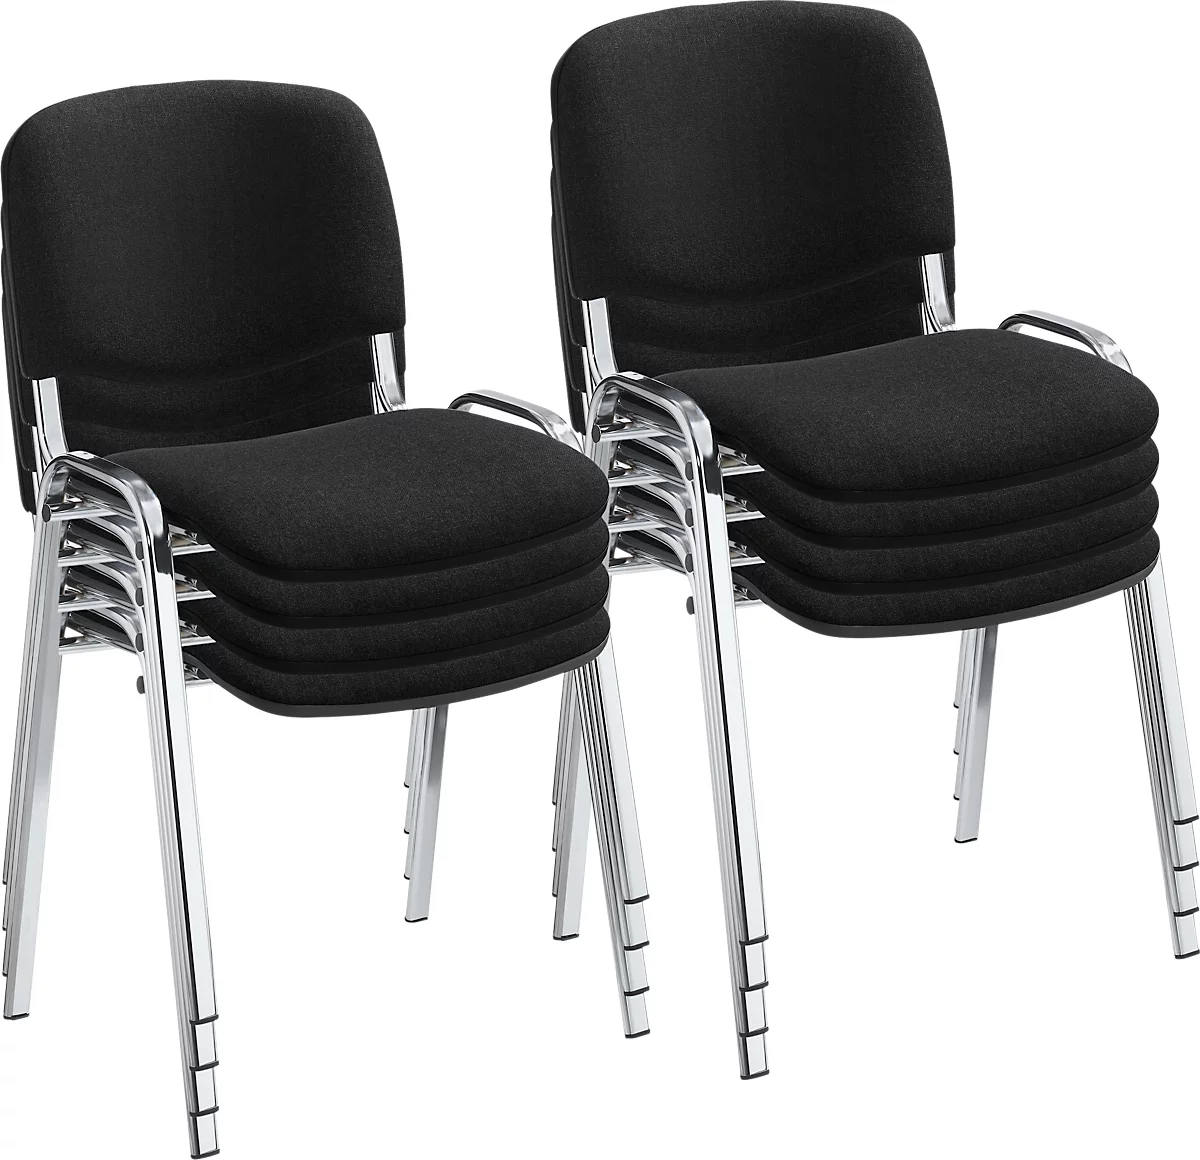 NowyStyl stapelstoelenset ISO BASIC, zonder armleuningen, stapelbaar tot 12 stuks, bekleding zwart, frame chroom zilver, 8 stuks